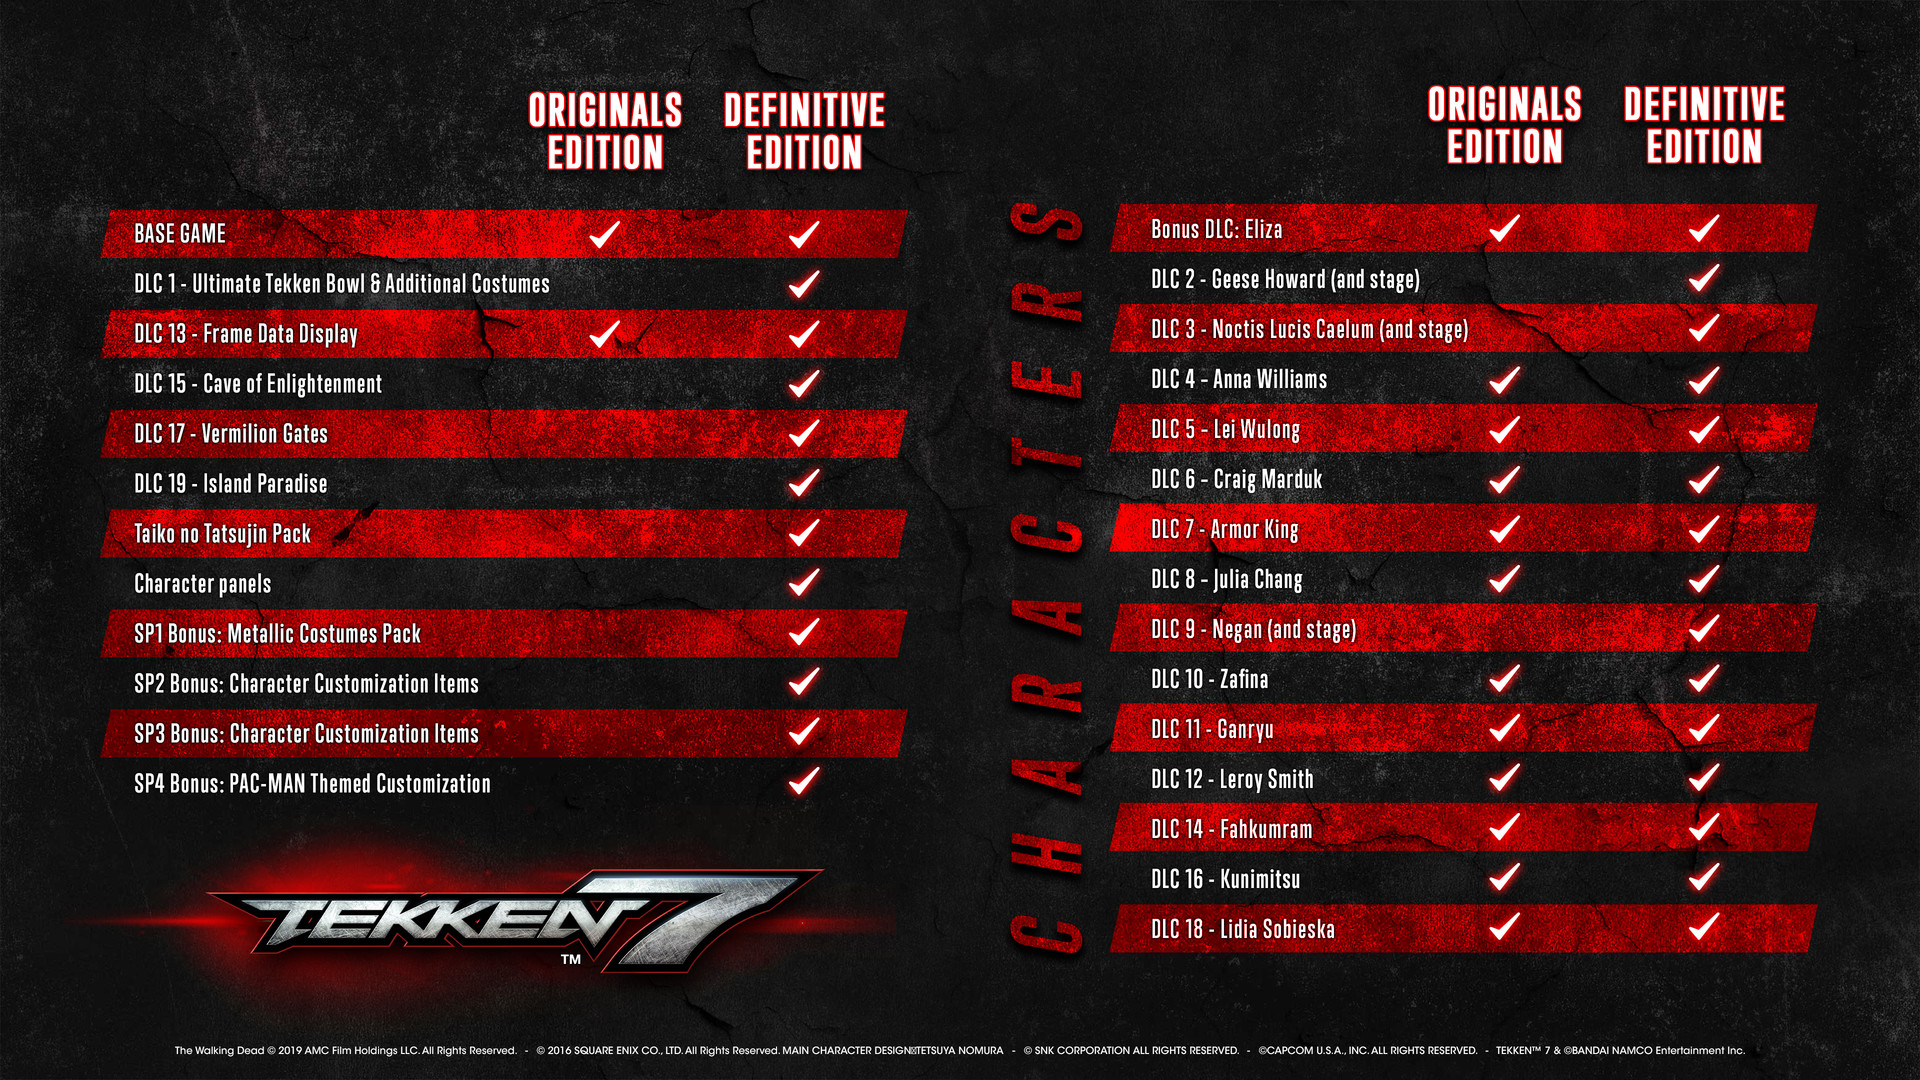 Tekken 7: All Game Modes Explained